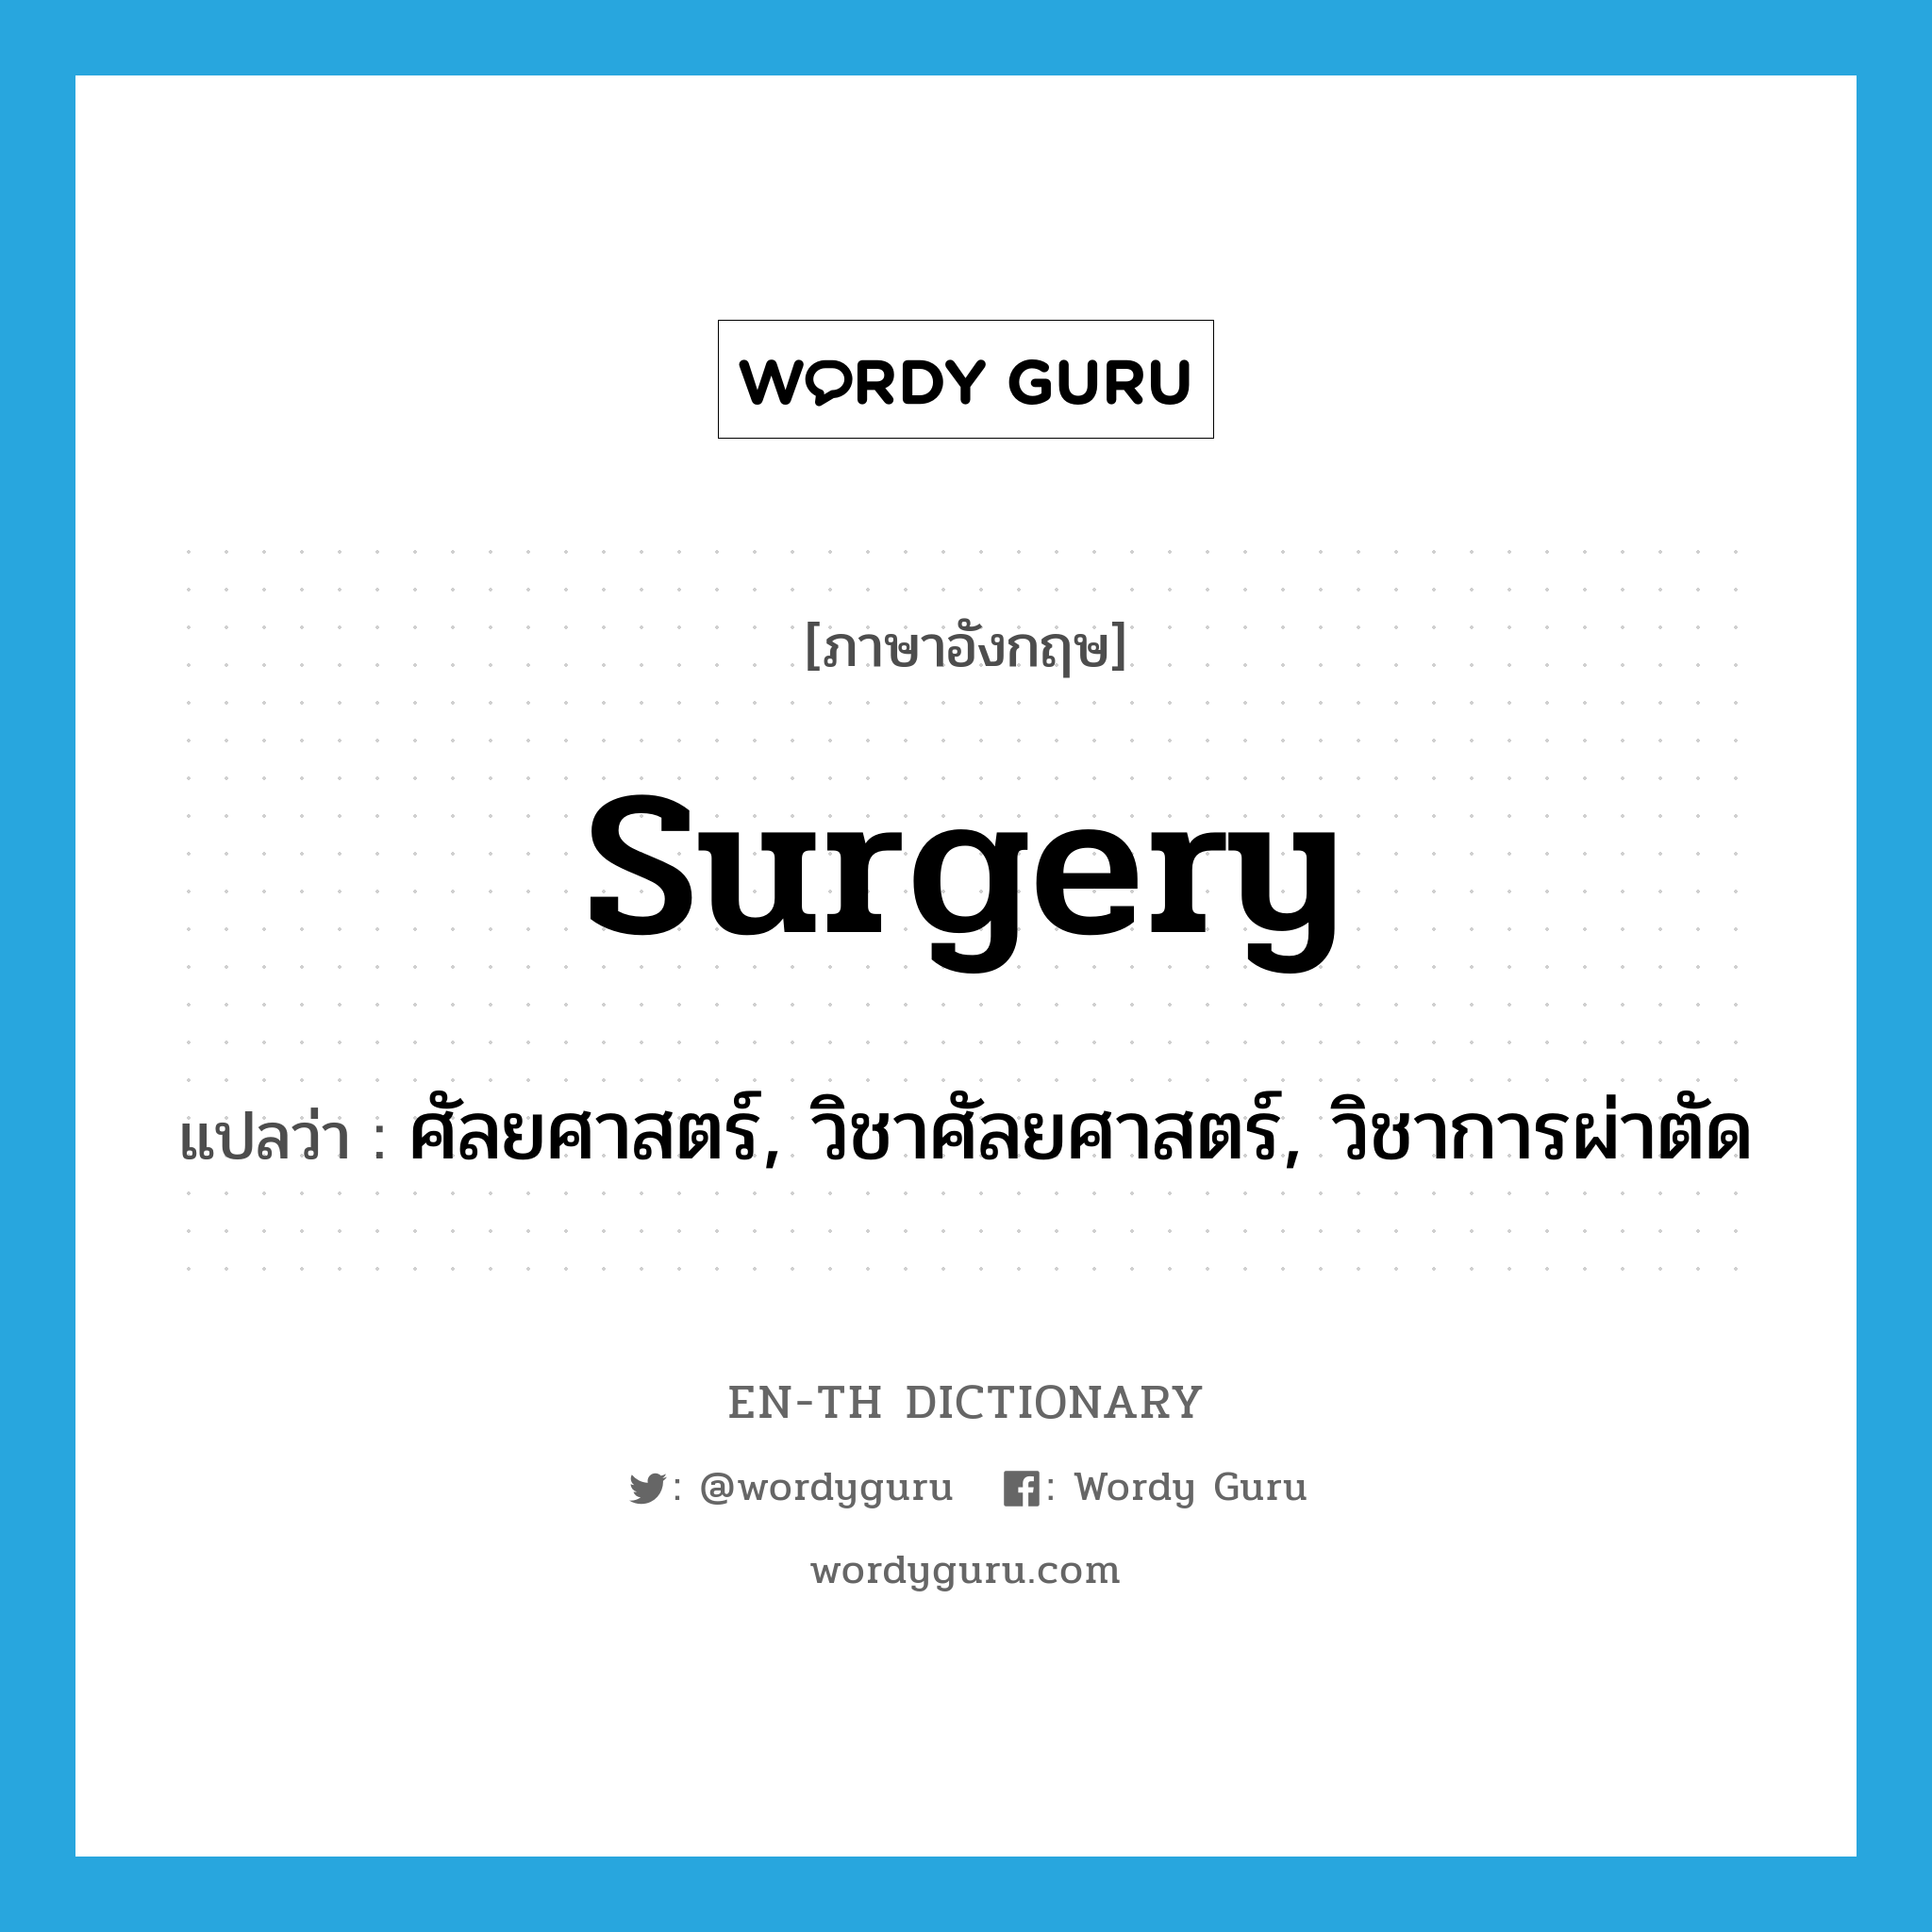 surgery แปลว่า?, คำศัพท์ภาษาอังกฤษ surgery แปลว่า ศัลยศาสตร์, วิชาศัลยศาสตร์, วิชาการผ่าตัด ประเภท N หมวด N